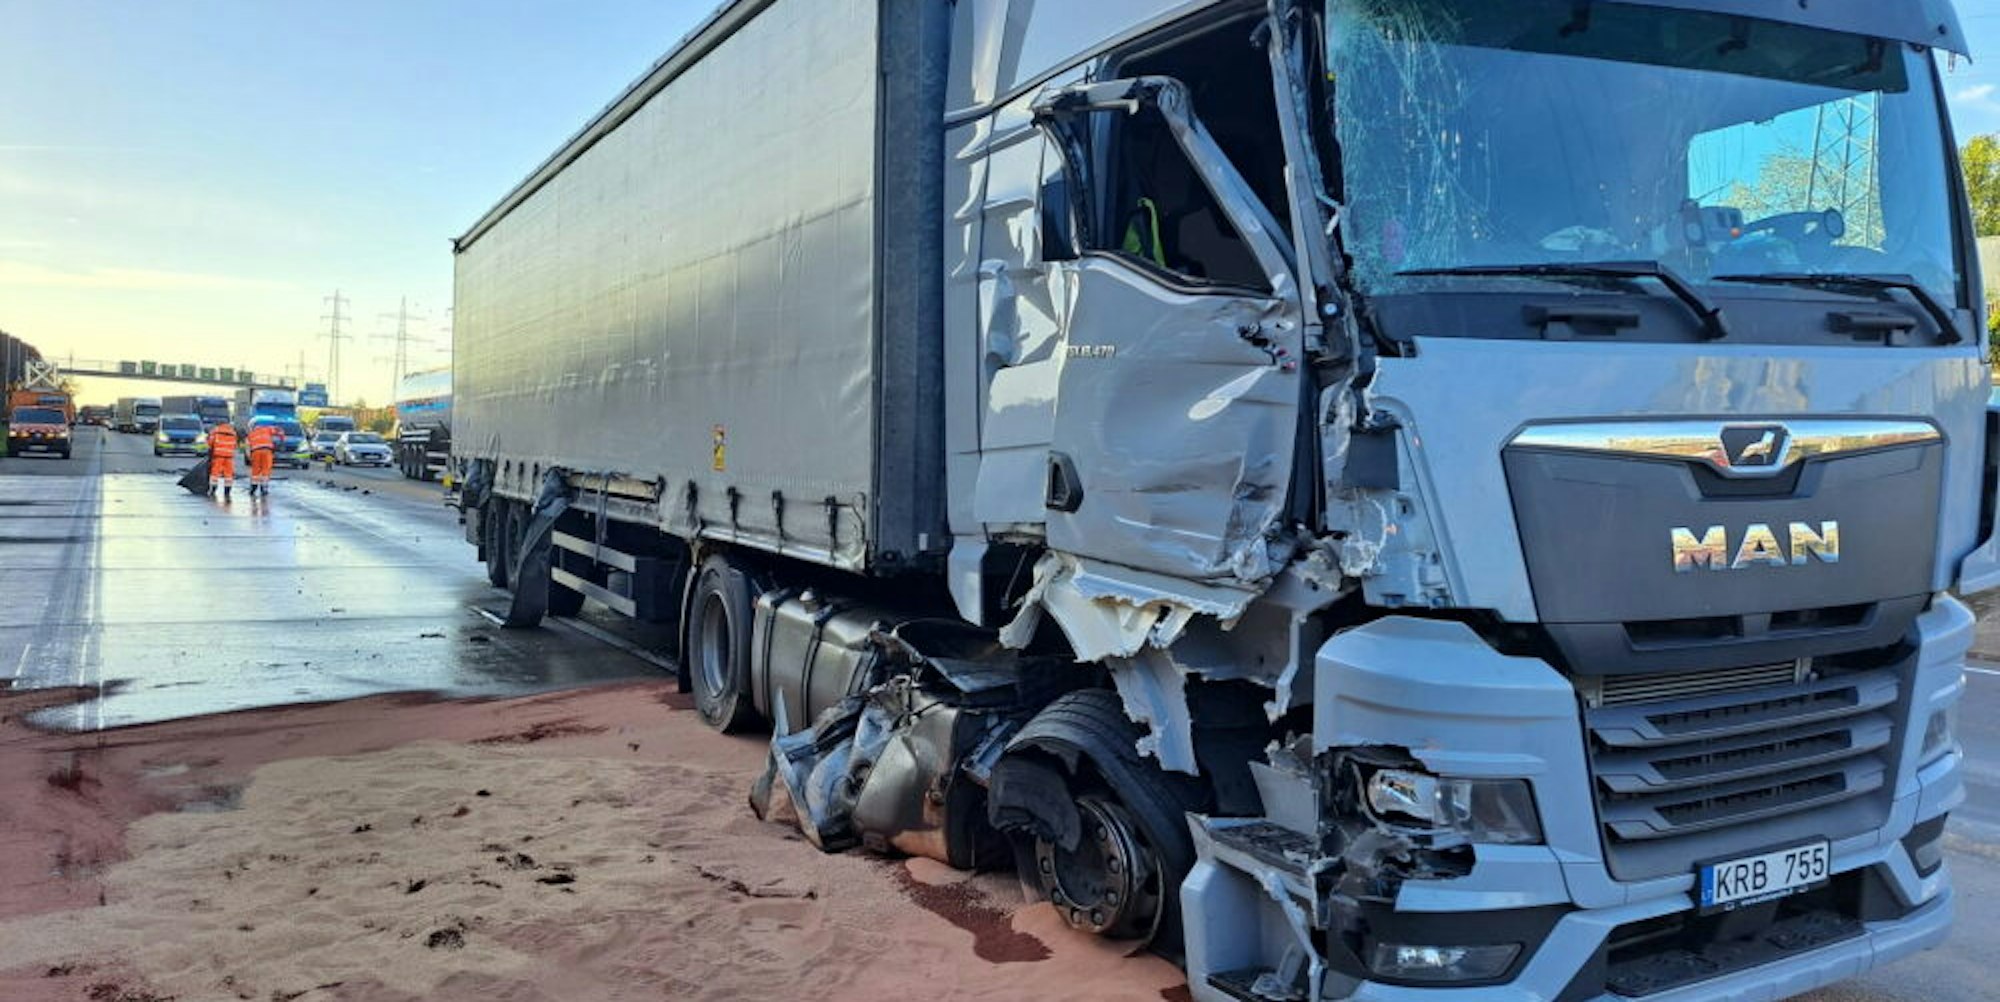 Stark beschädigt: Dieser Lastwagen fuhr auf einen weiteren Lastwagen auf. Der Tank wurde aufgeschlitzt und Diesel trat in großen Mengen aus.